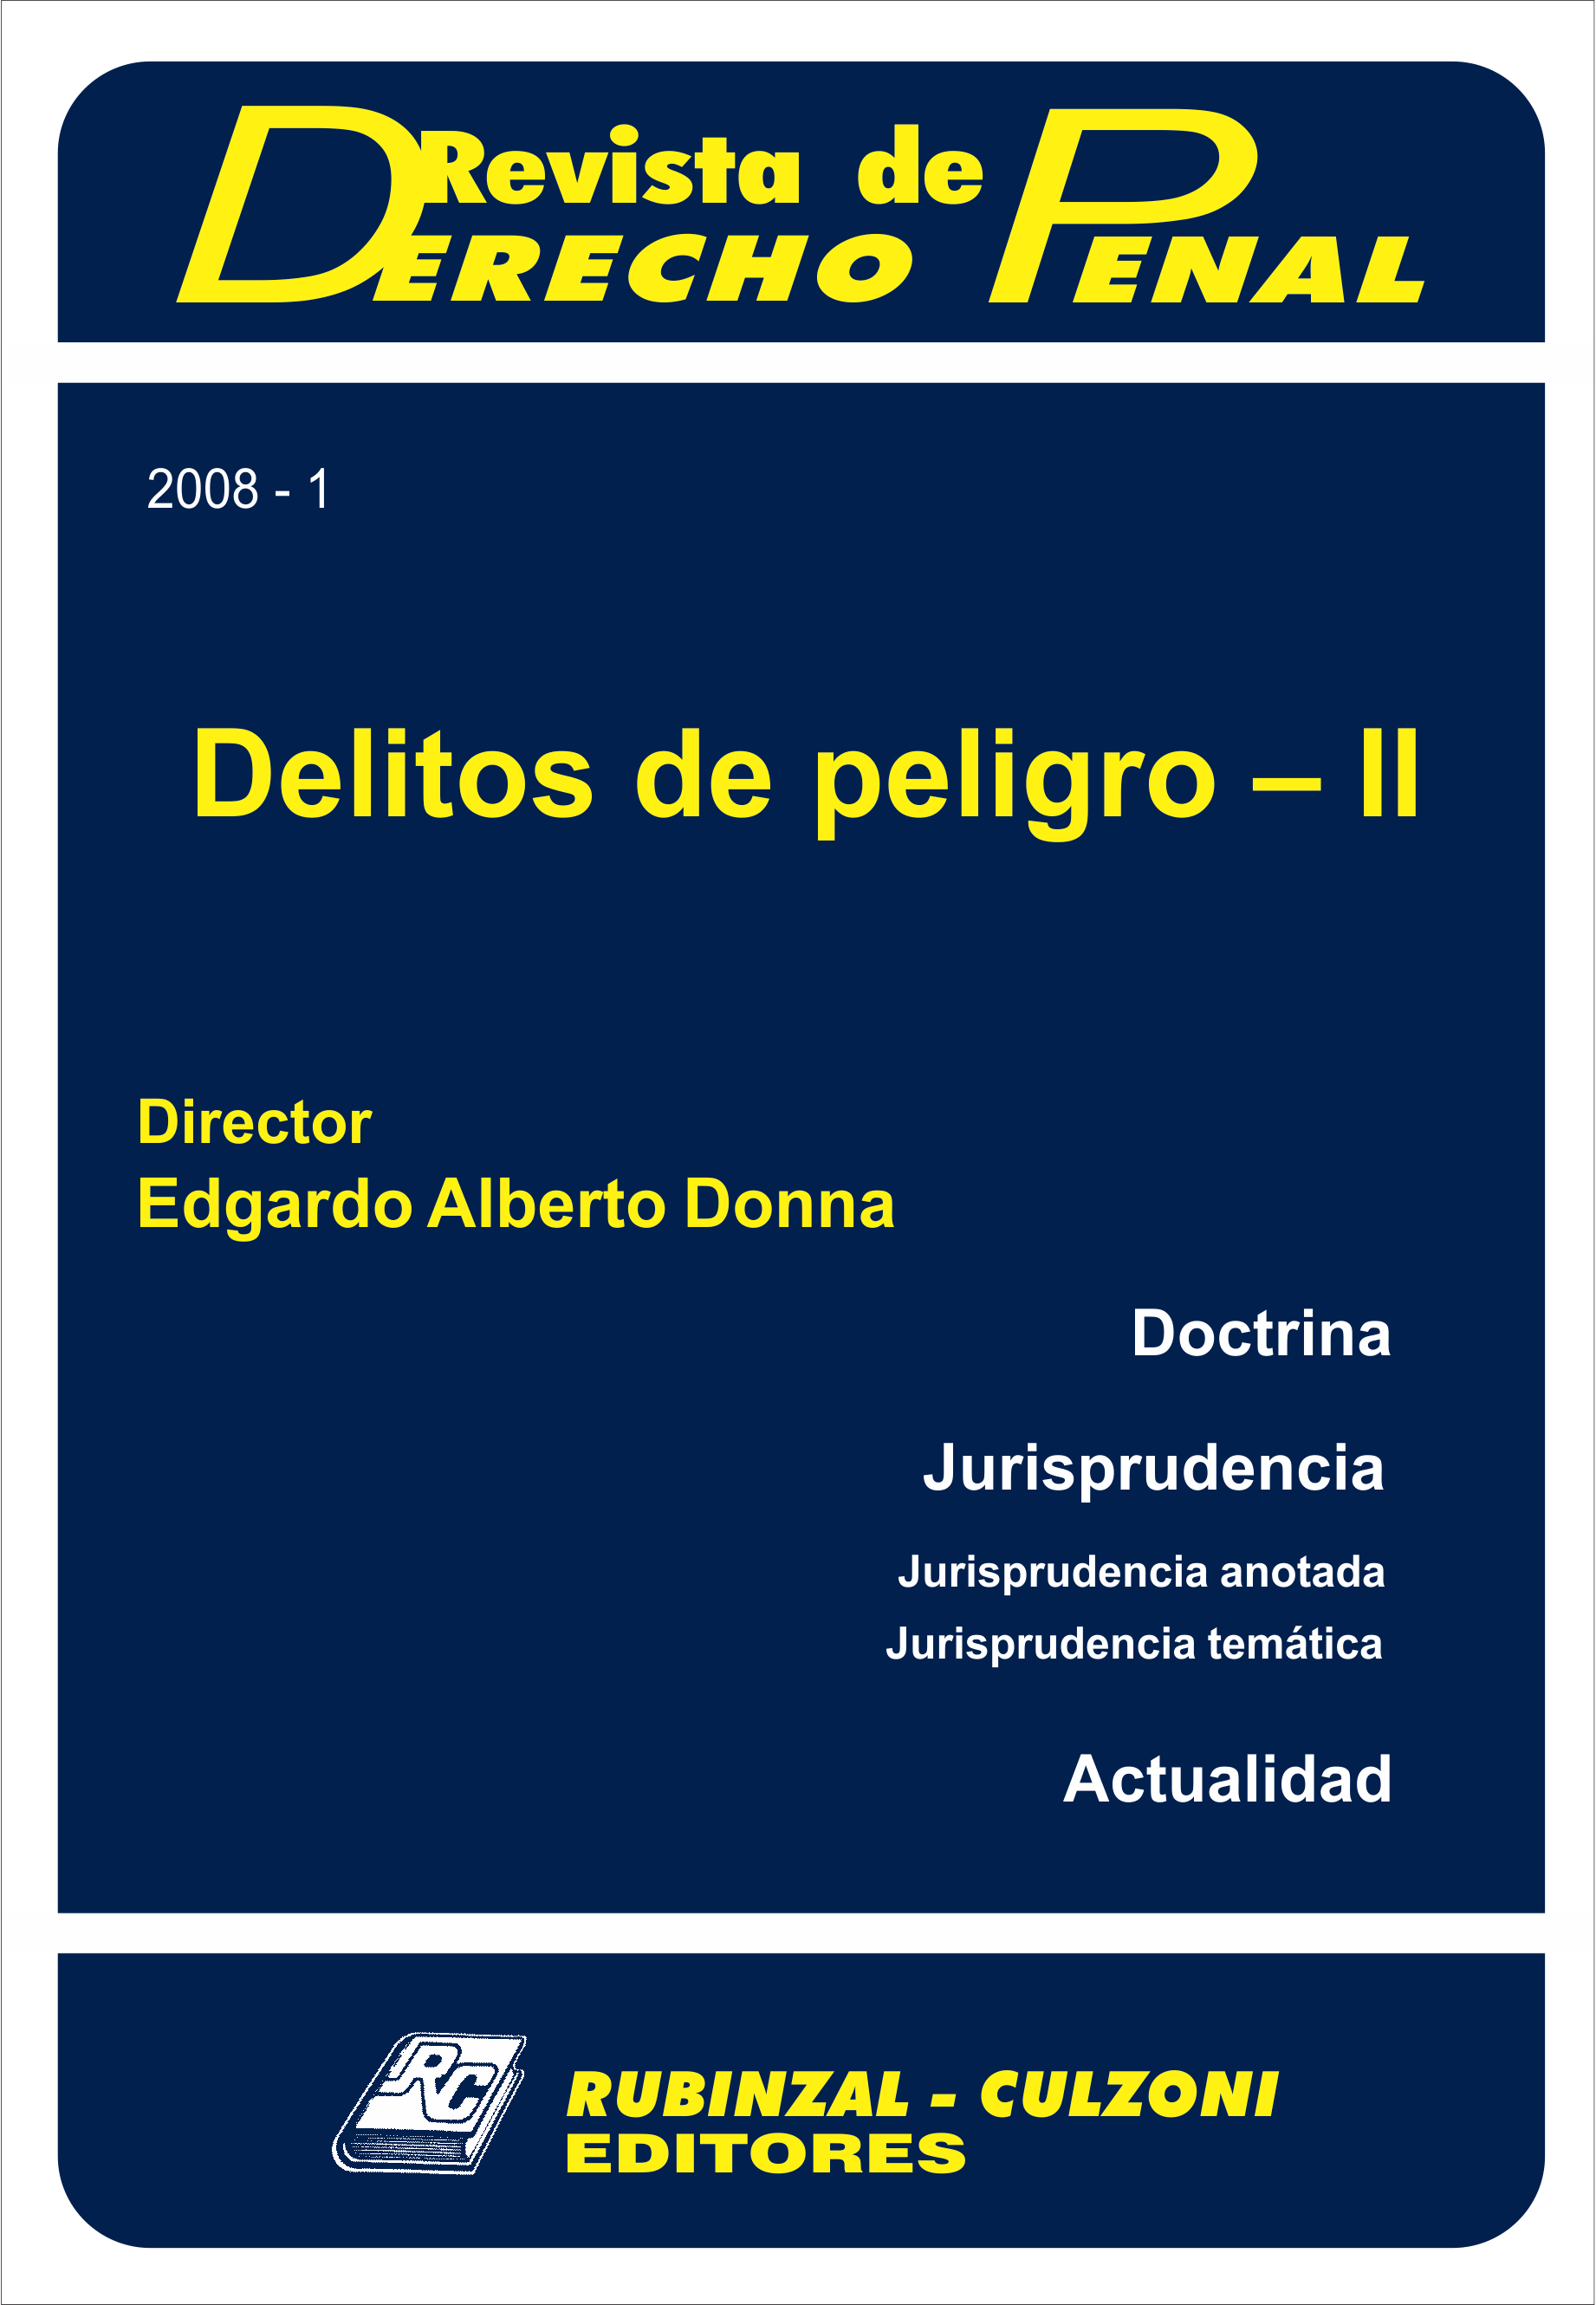 Revista de Derecho Penal - Delitos de peligro - II. [2008-1]